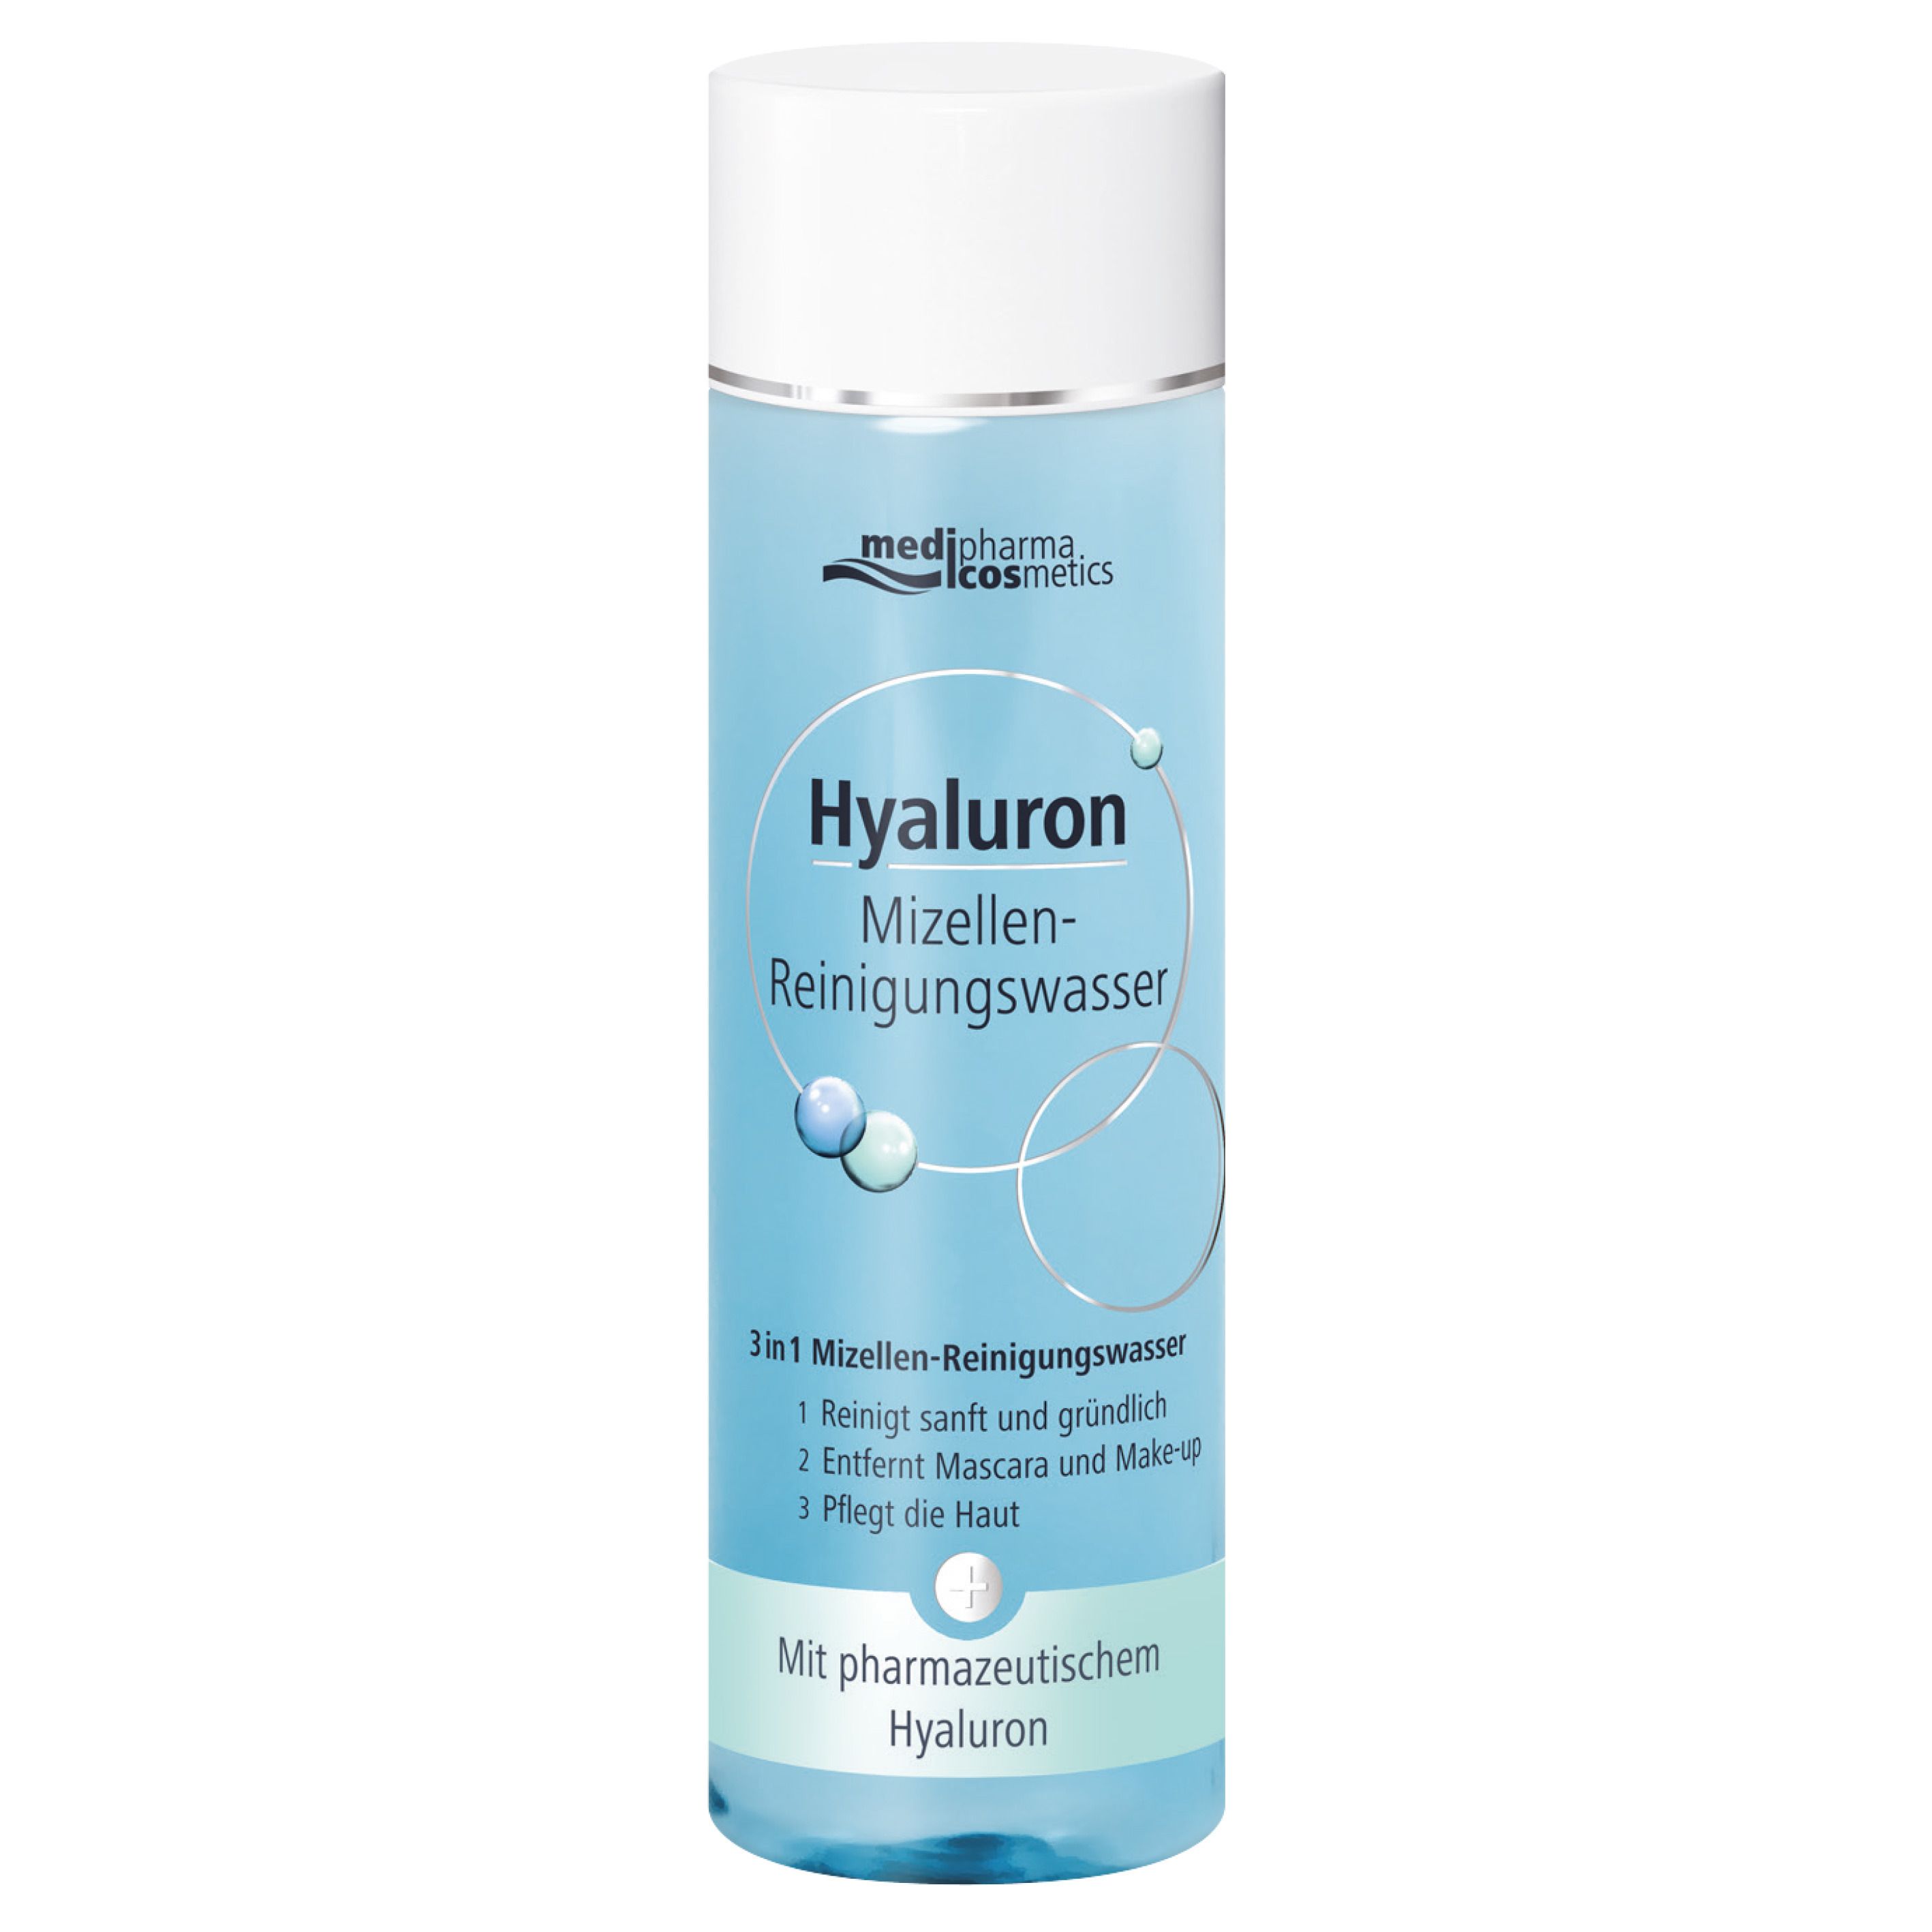 medipharma cosmetics Hyaluron Mizellen-Reinigungswasser